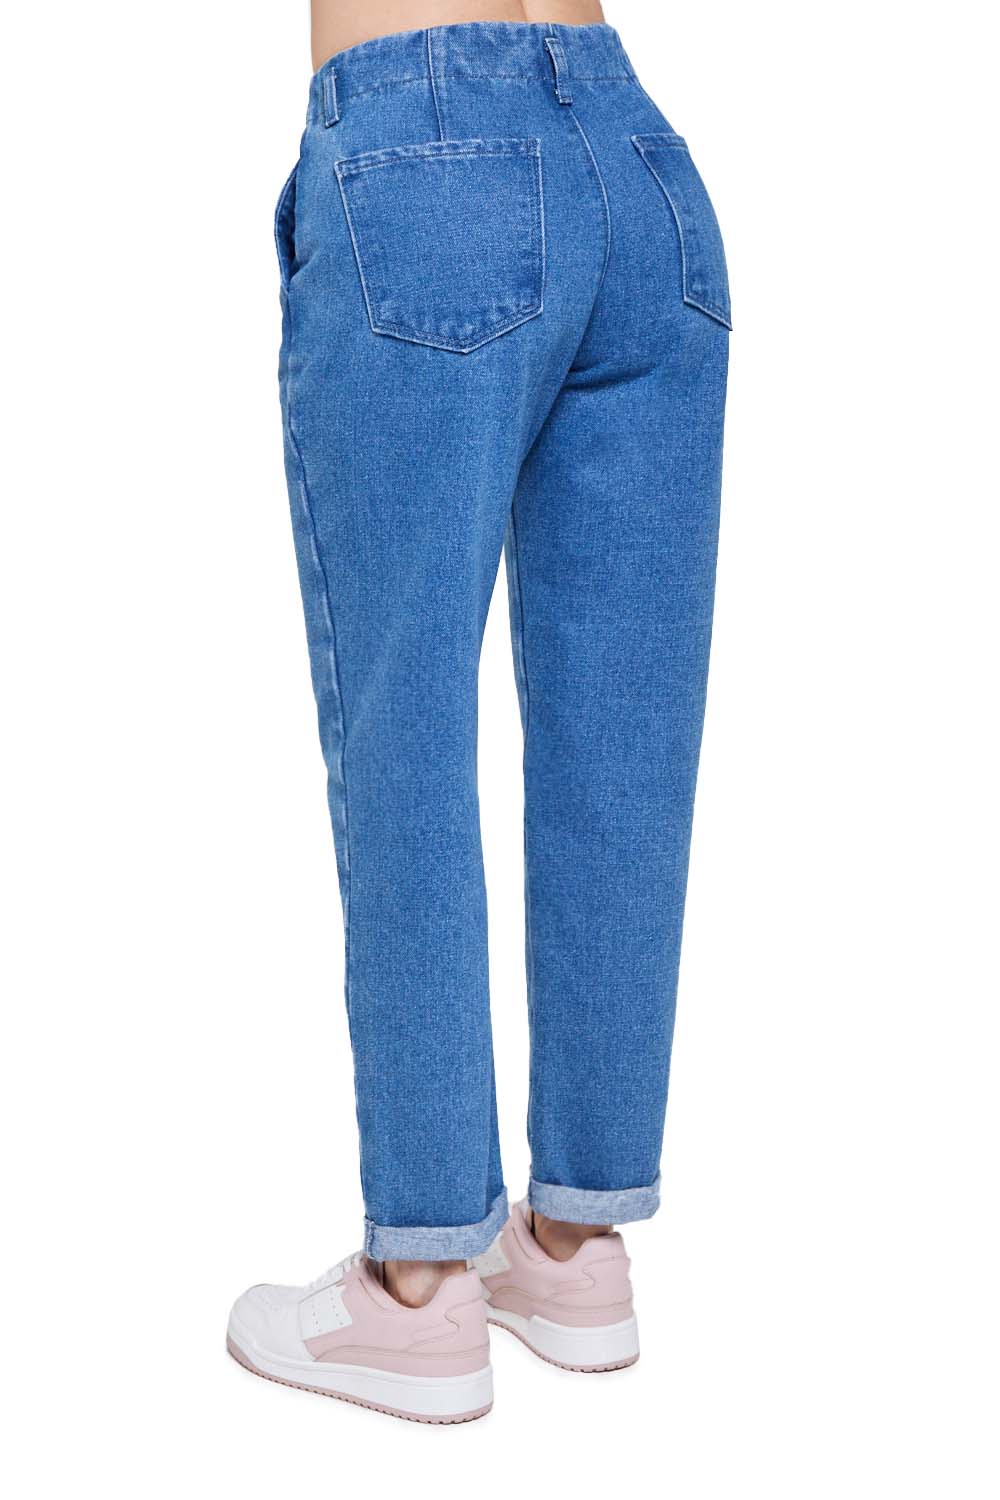 Jeans De Cintura Alta Para Dama Azul Mezclilla